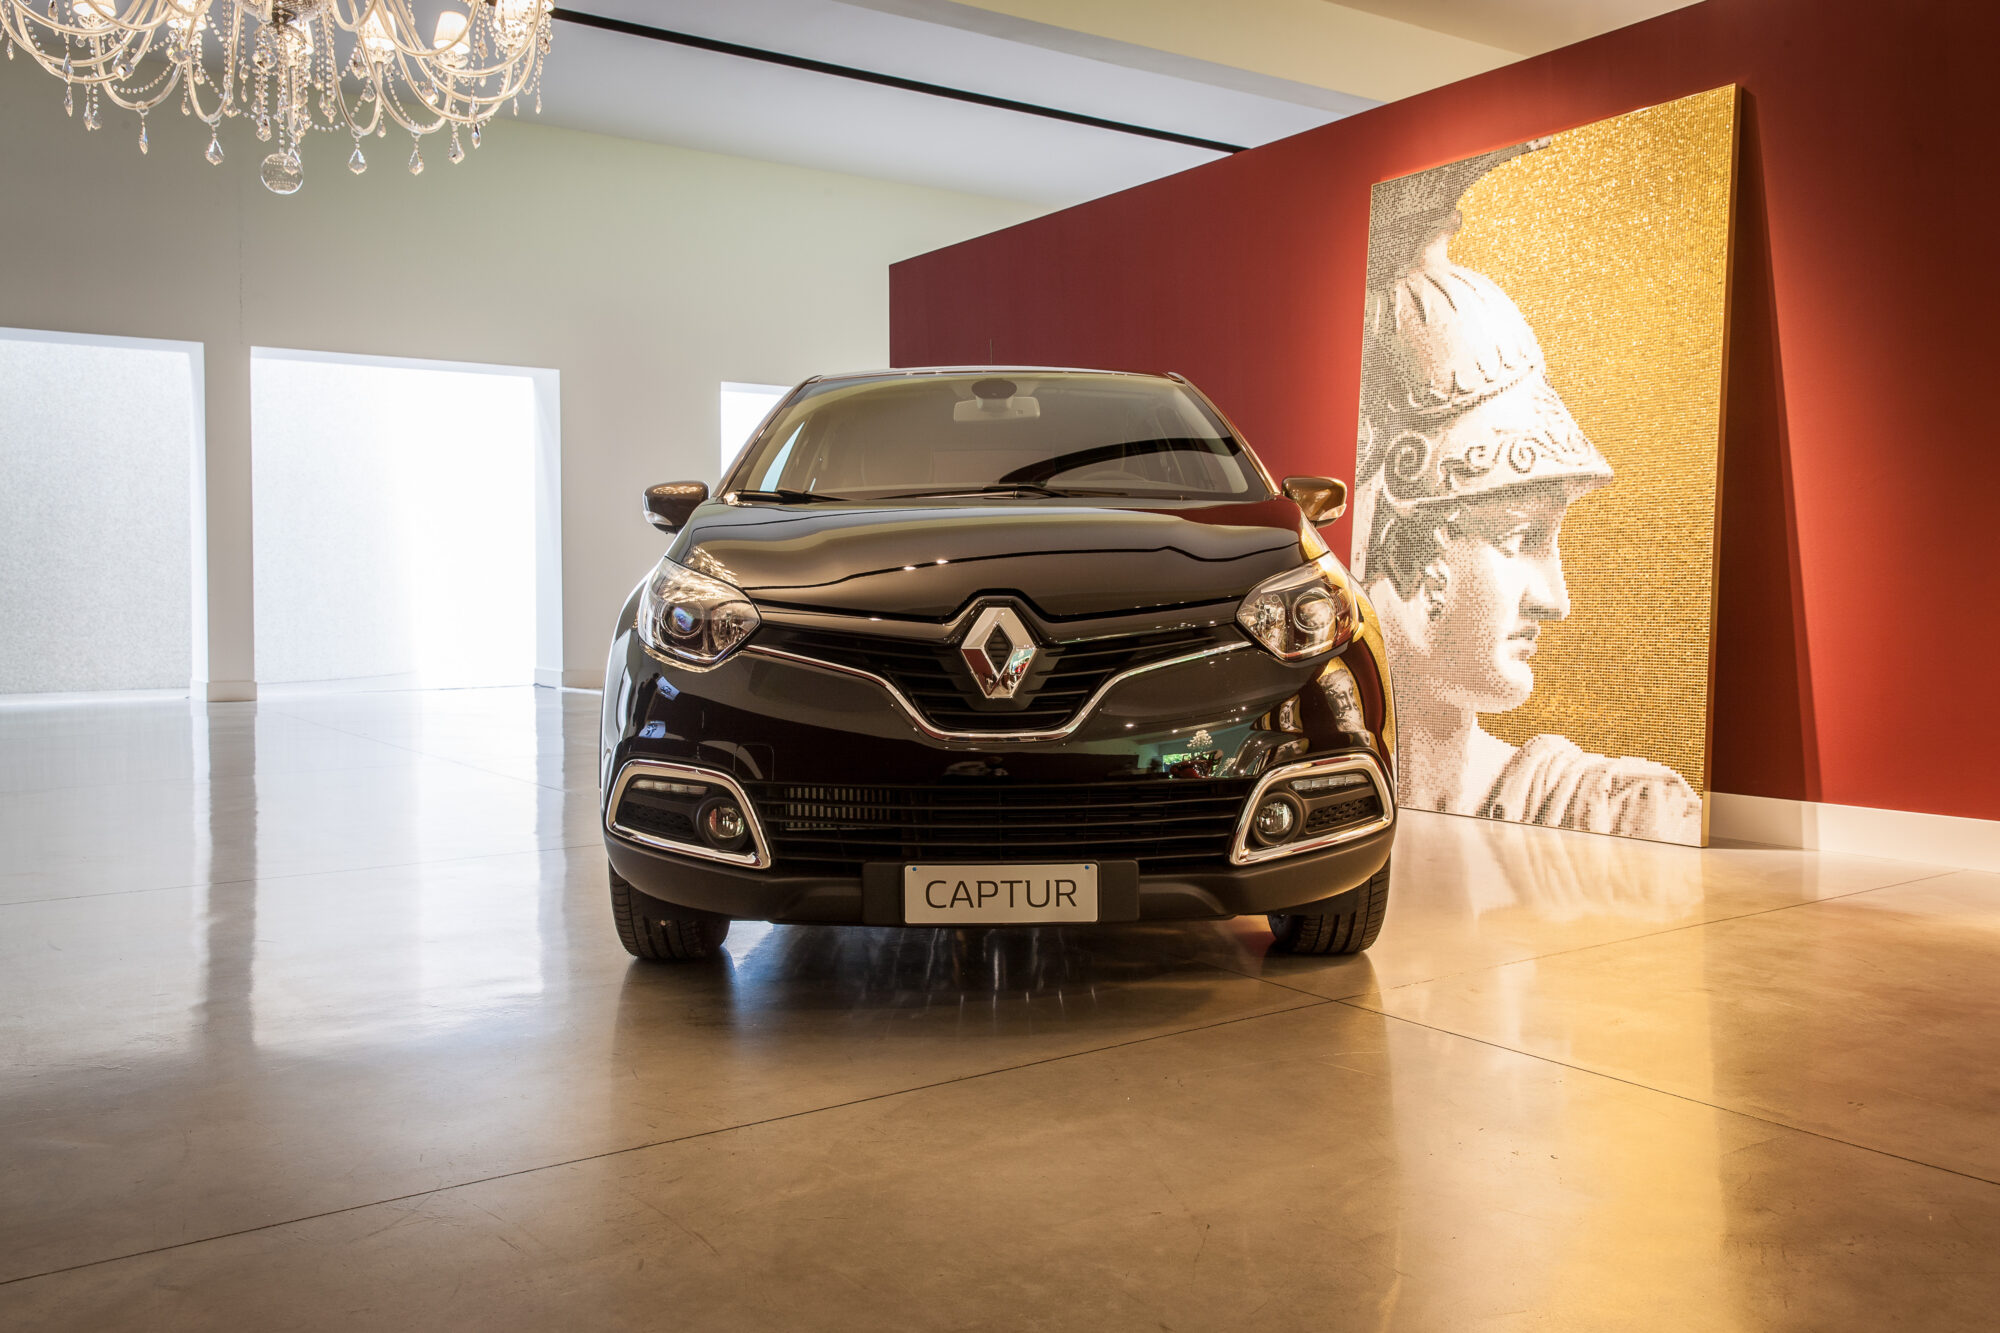 Renault Captur Iconic